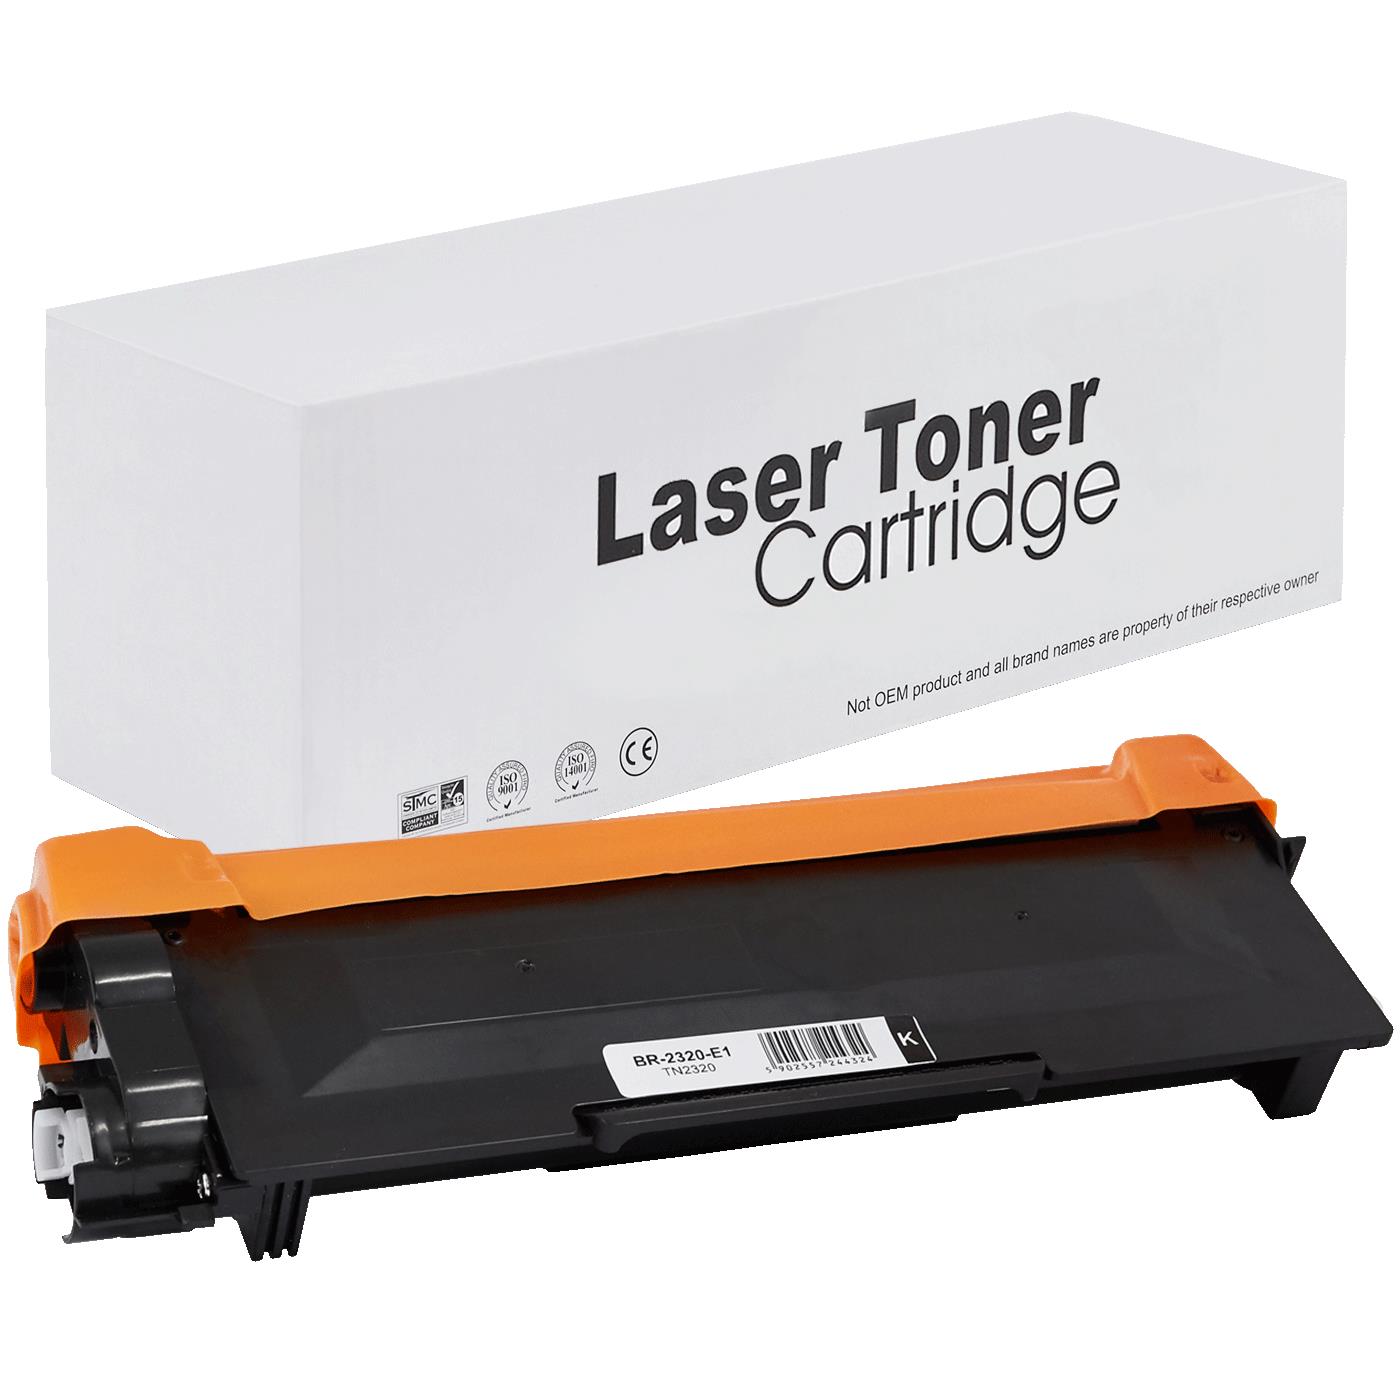 съвместима тонер касета за принтери и печатащи устройства на Brother MFC-L 2700 SERIES Toner BR-2320 | TN2320 / TN2310 / TN-2320. Ниски цени, прецизно изпълнение, високо качество.